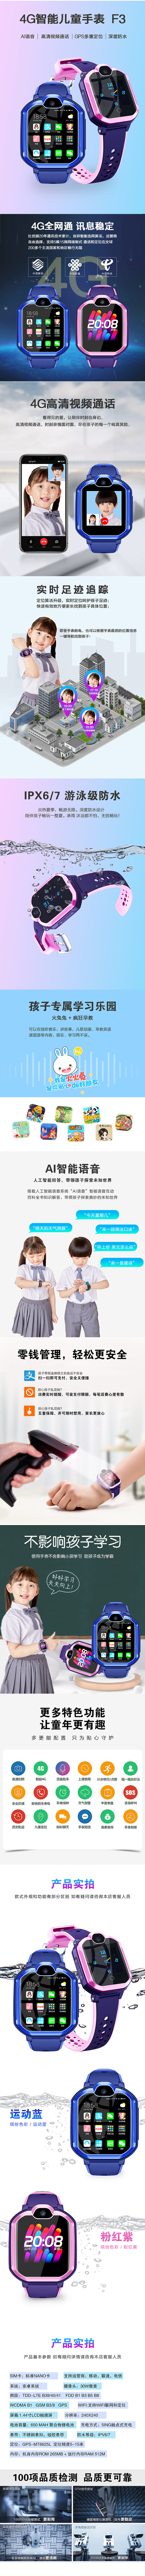 淘宝美工苏叶扁平化  手表 儿童手表  益智  电子手表详情页作品